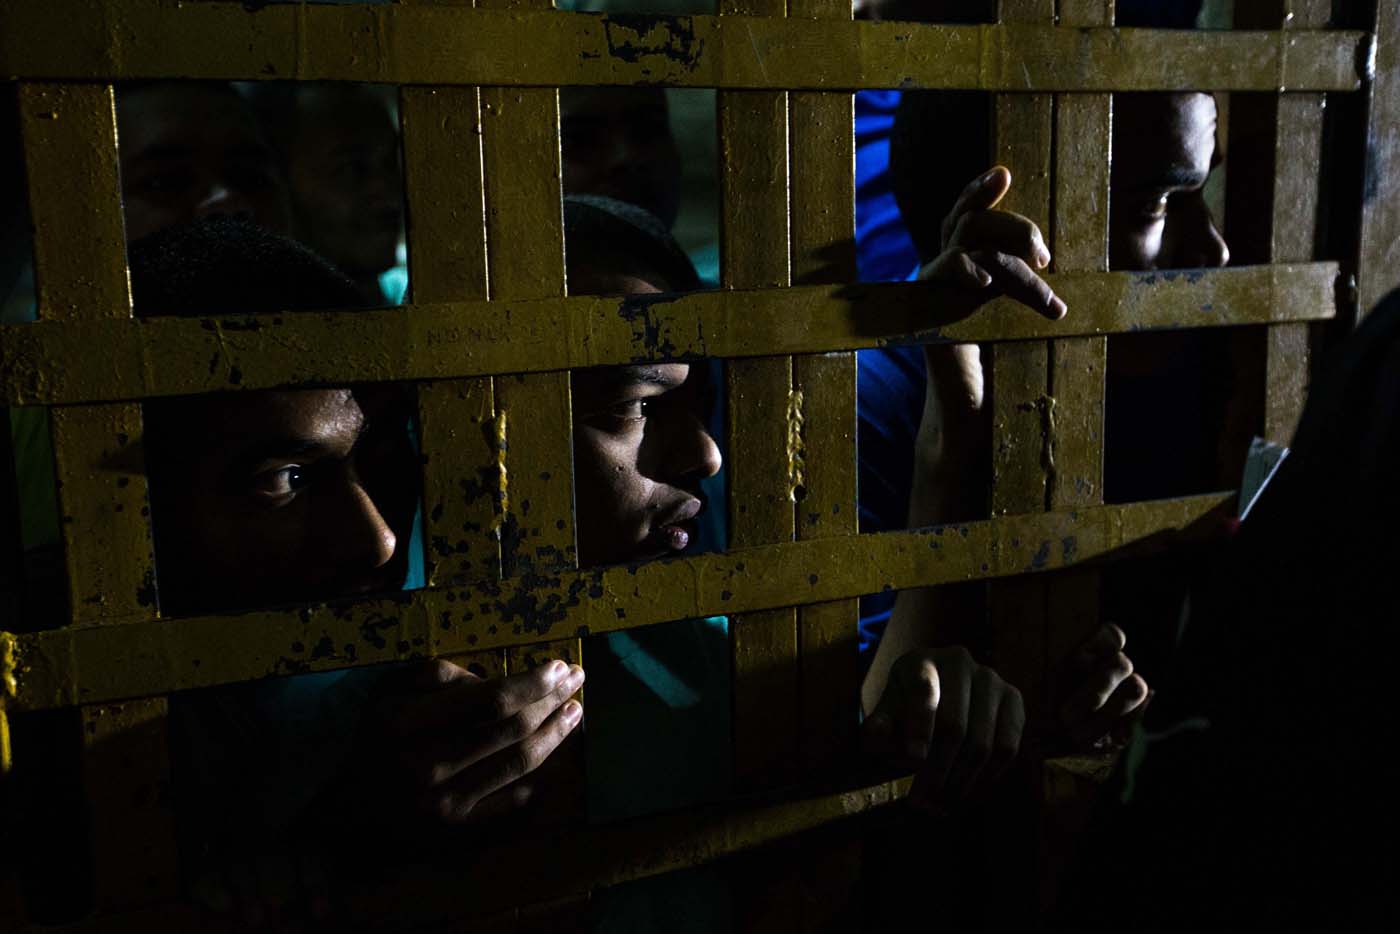 Las cárceles venezolanas, convertidas en “depósitos miserables, donde no hay nada”